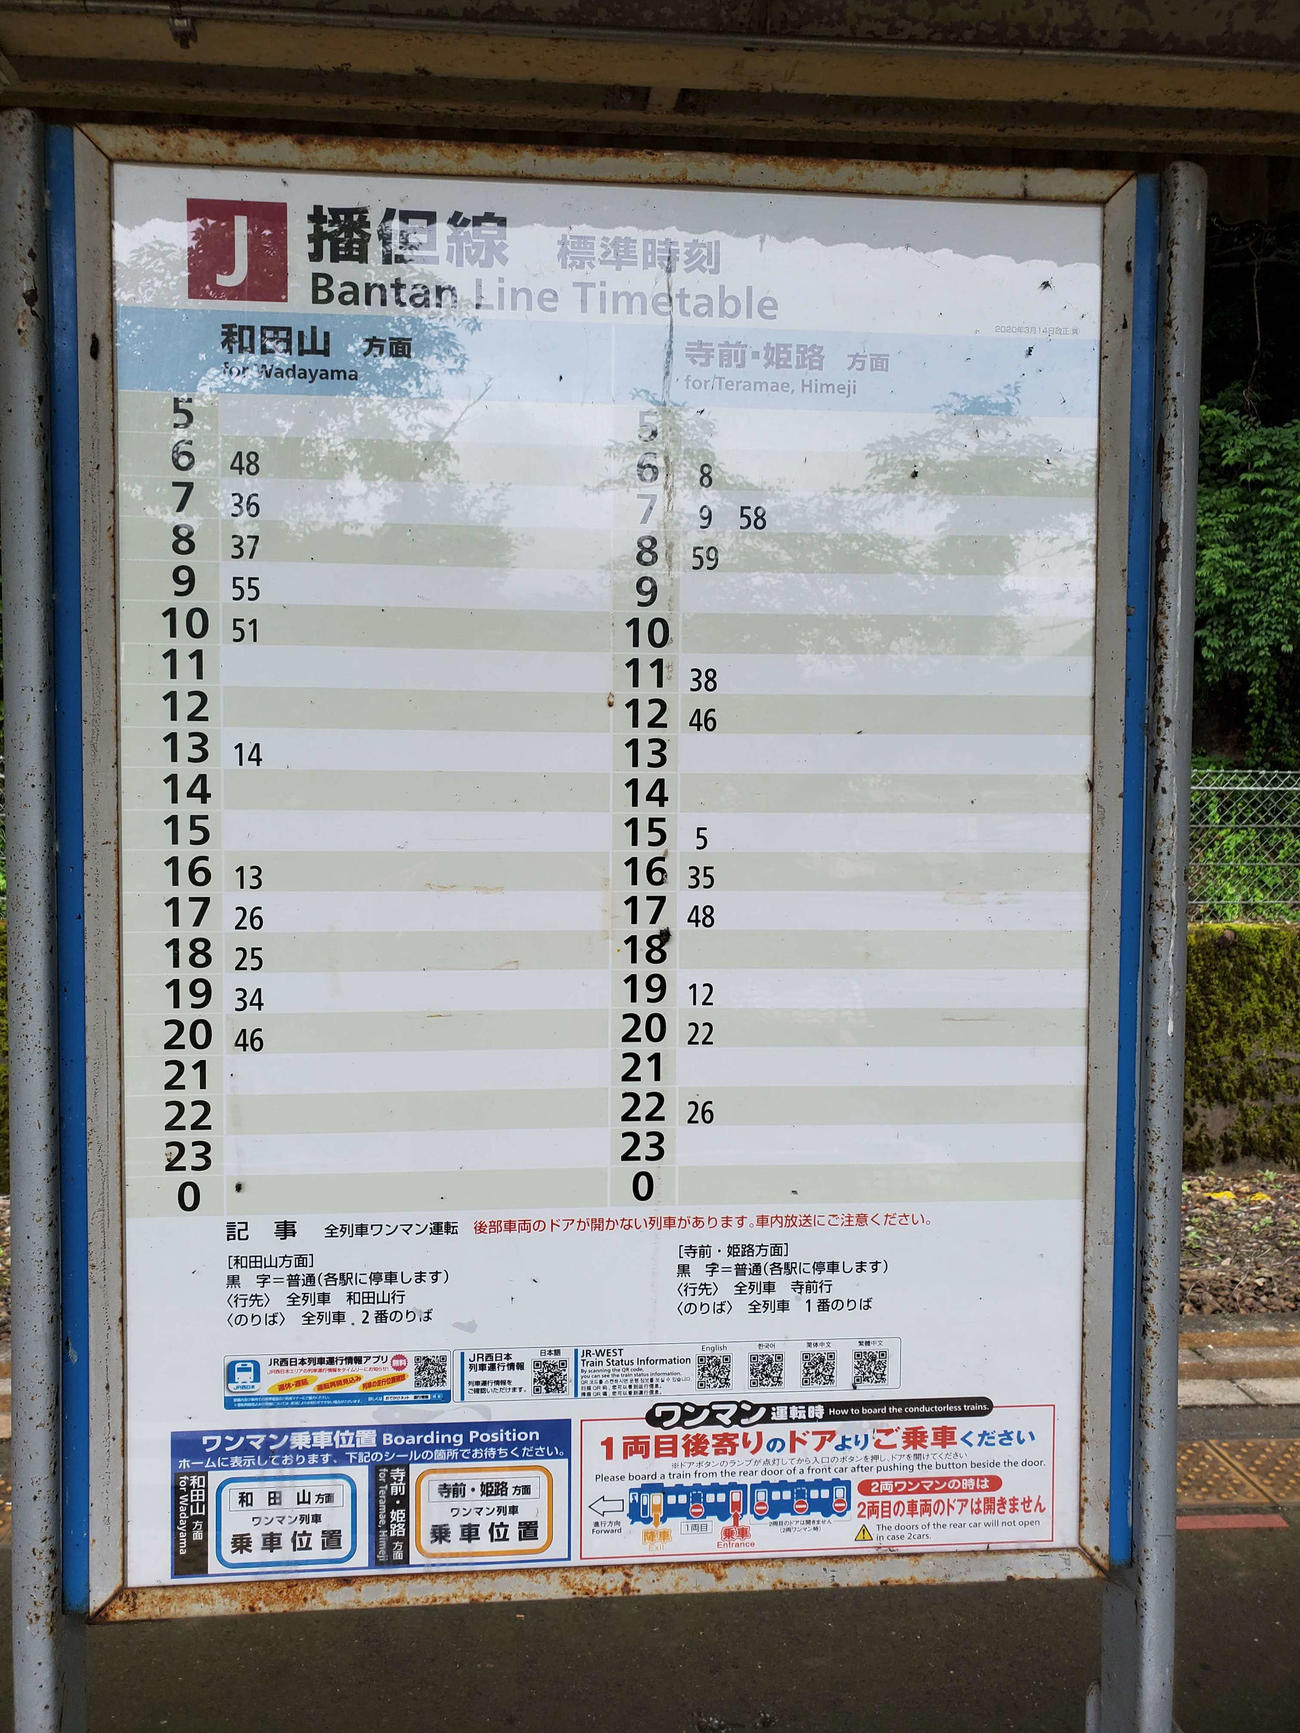 〈16〉長谷駅の時刻表。3時間空白の時間帯がある